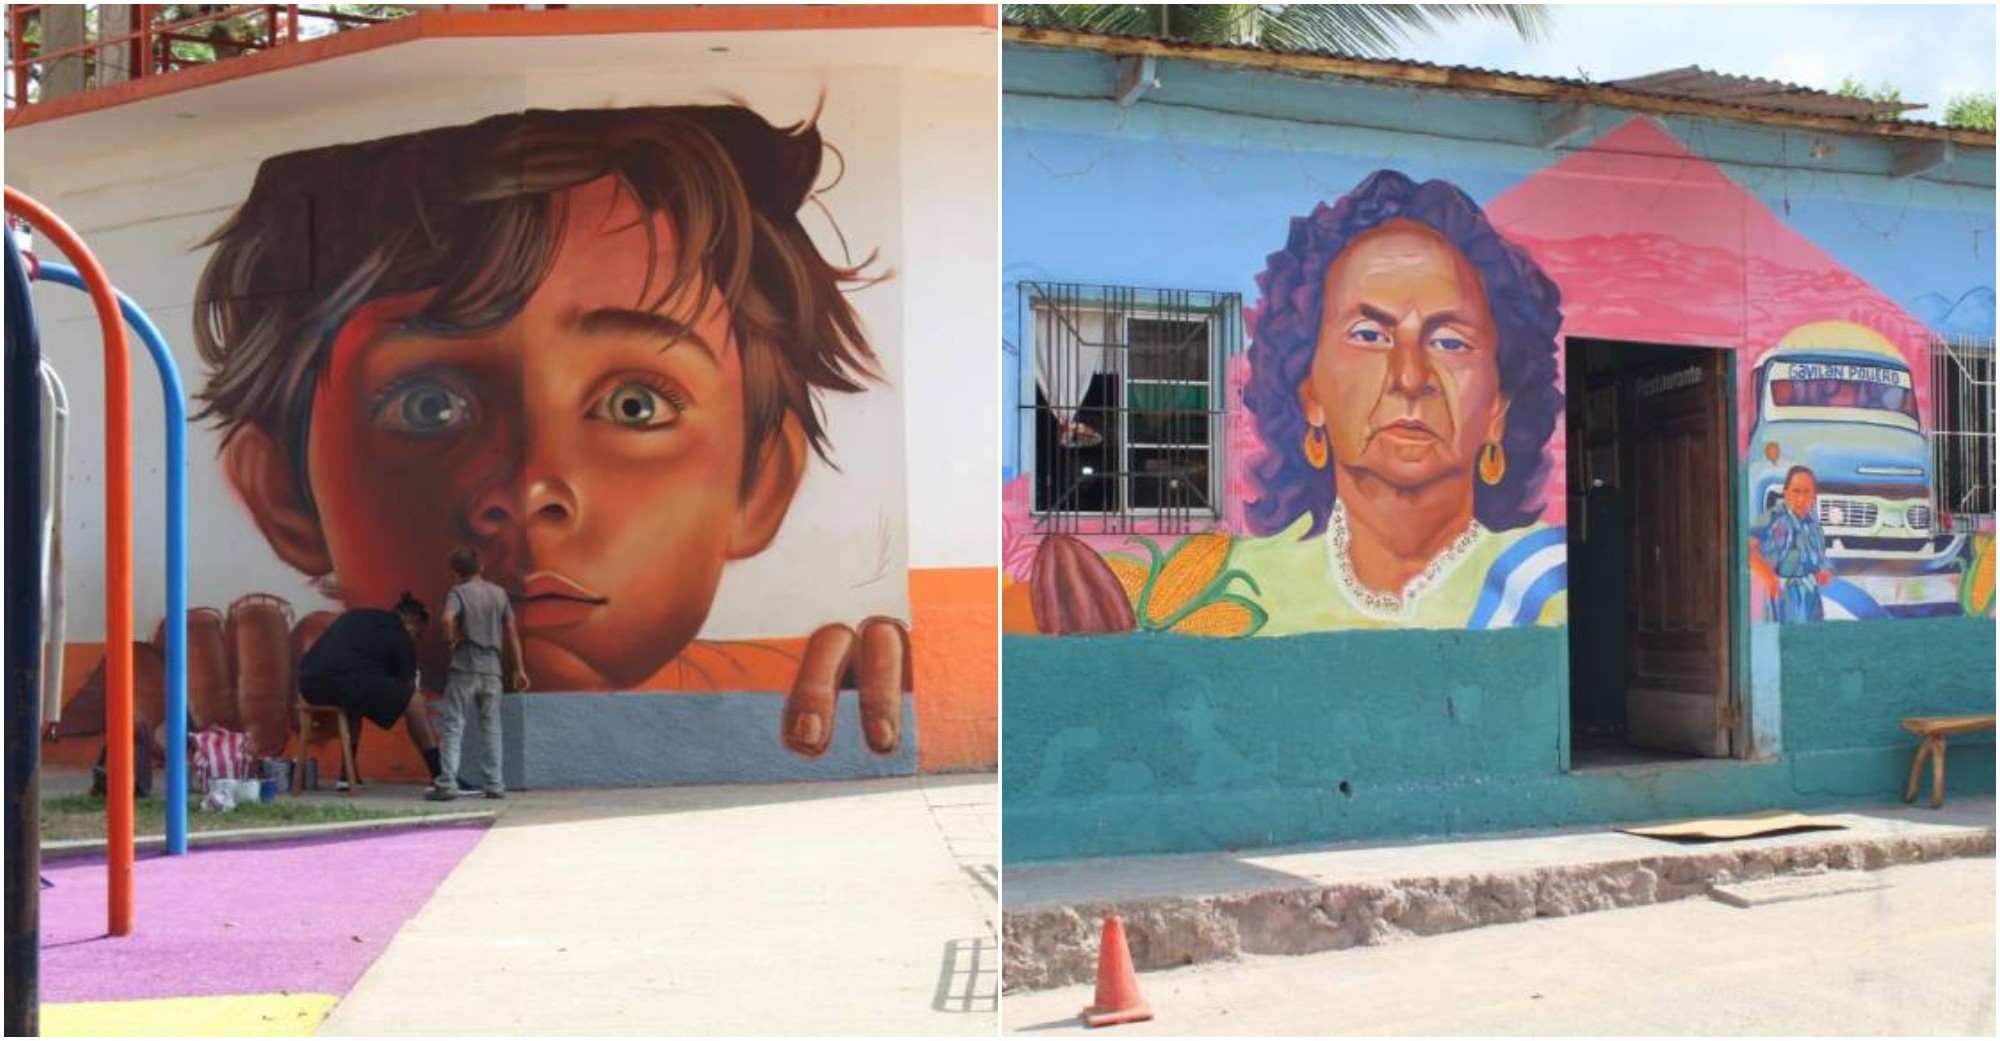 San Antonio, Cortés se llenó sus calles de arte y color con murales